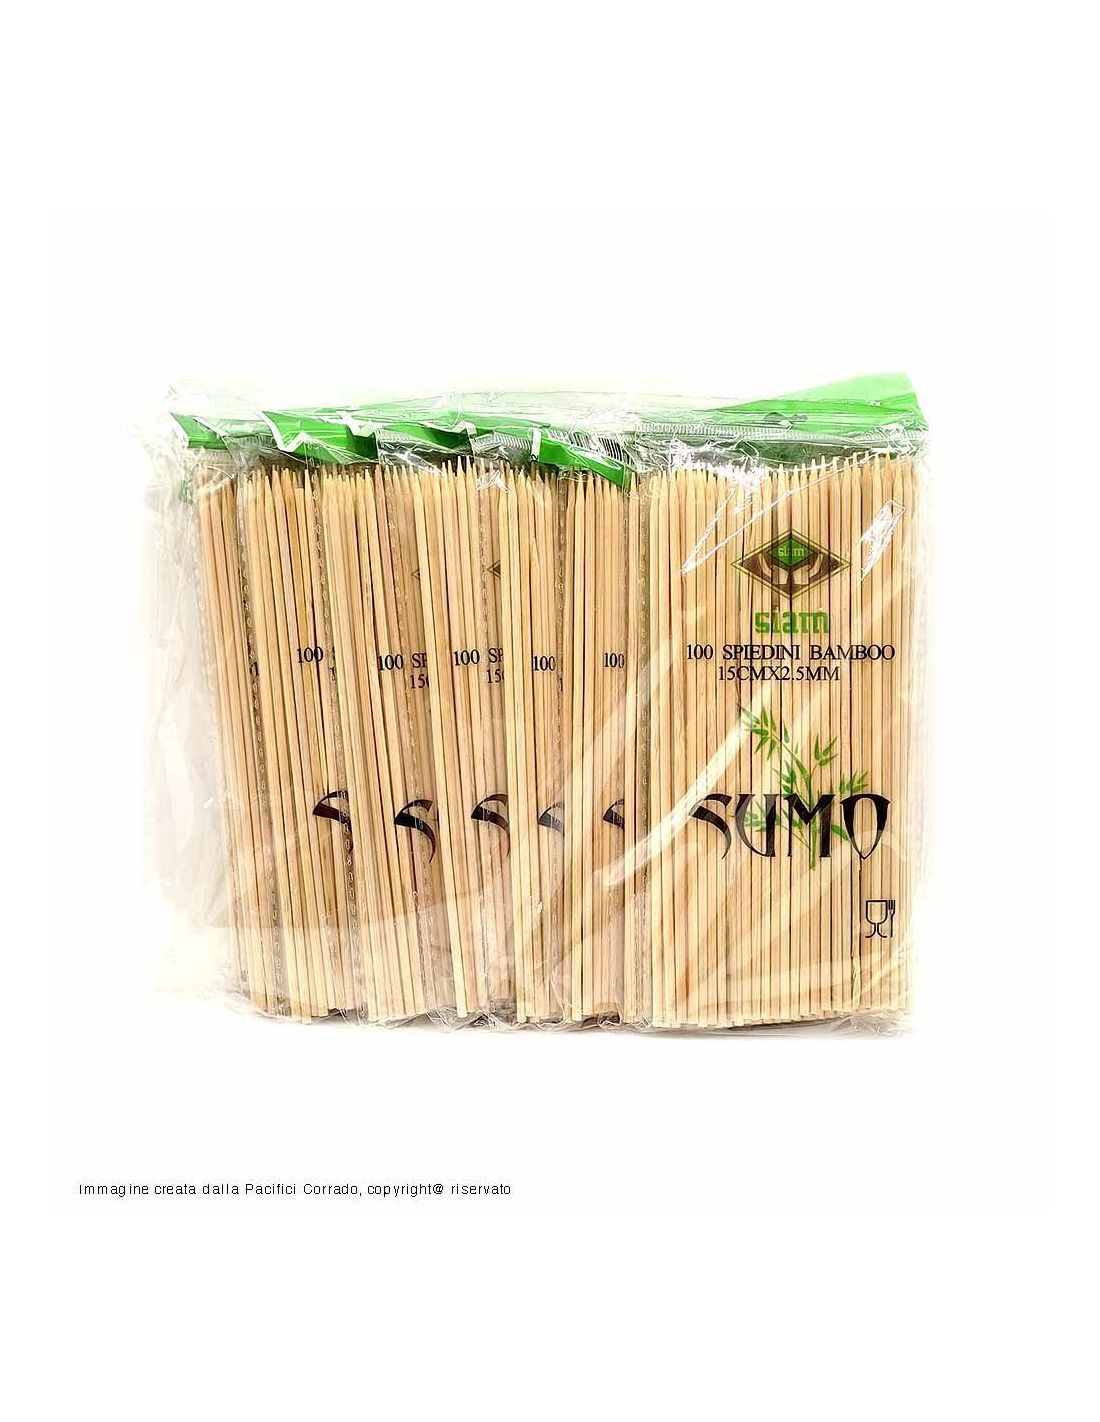 siam 1000 spiedini stecchini in bambù 10 confezioni contenente 100 pz xi stecchini ciascuna